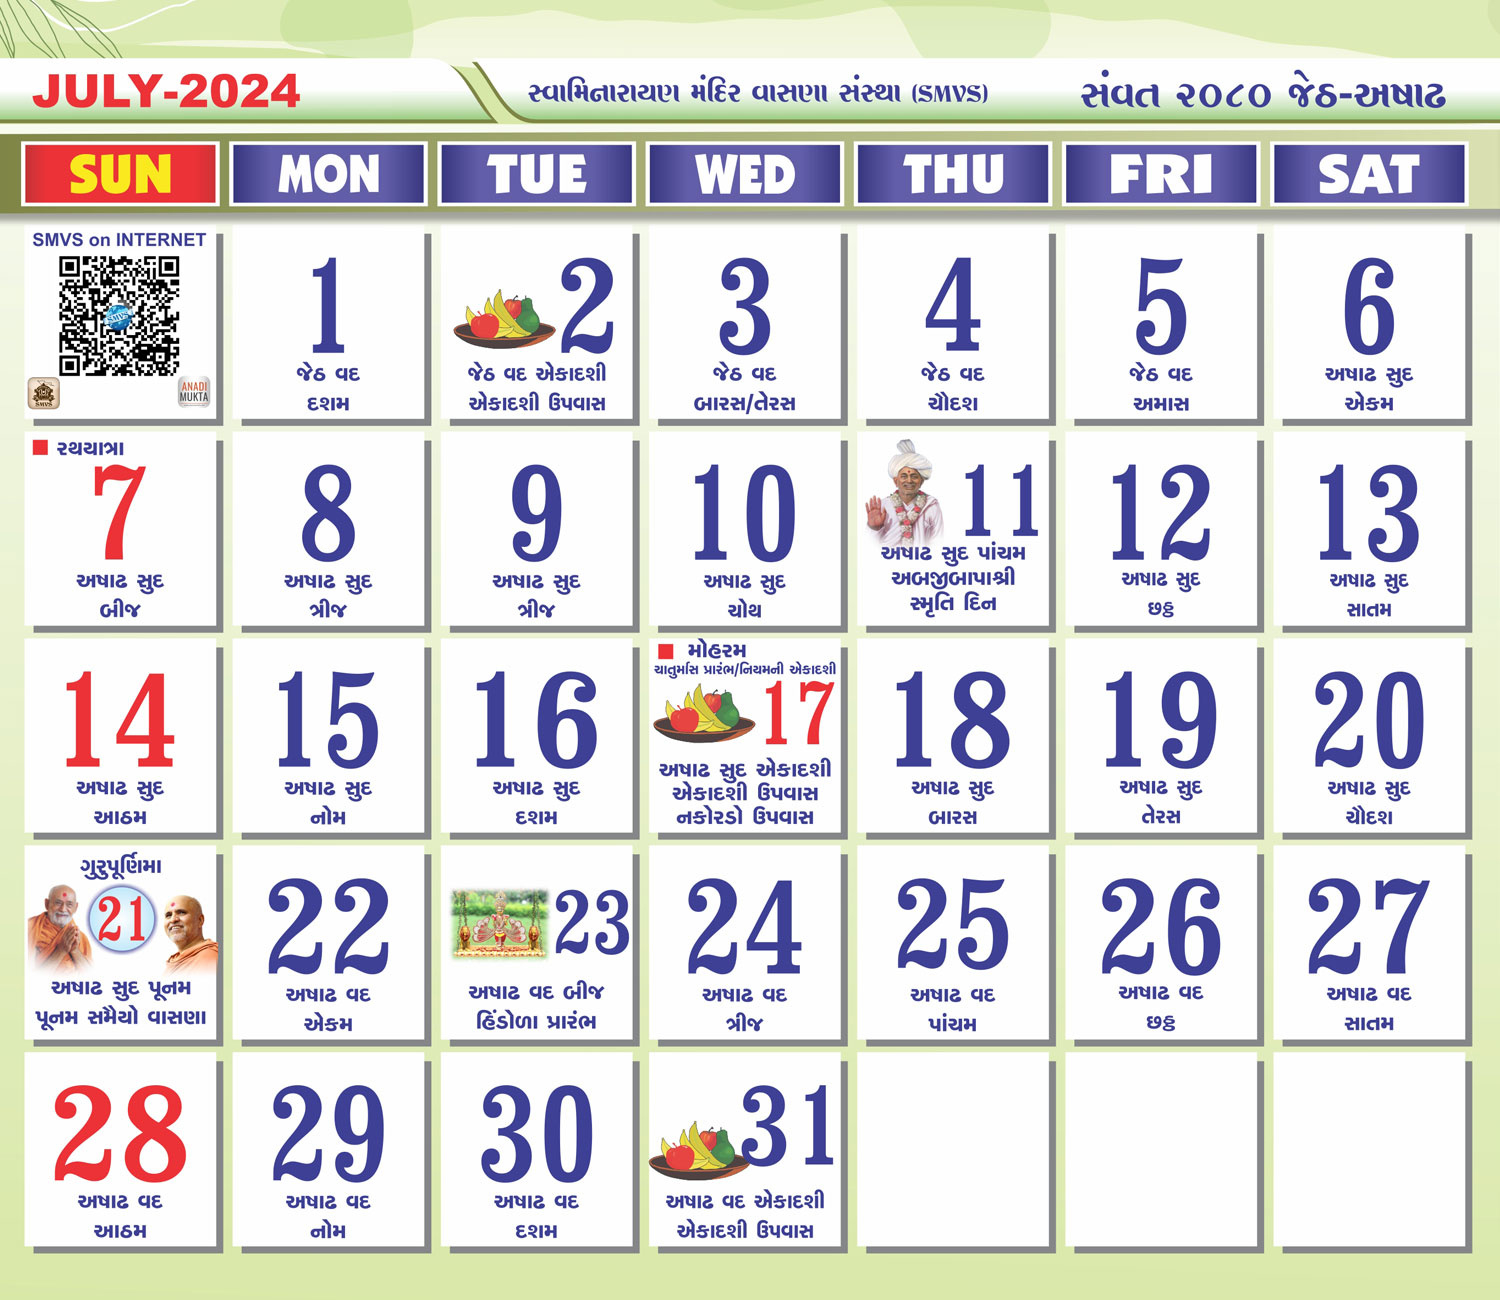 Swaminarayan Mandir Vasna Sanstha - Smvs with Gujarati Calendar 2024 July